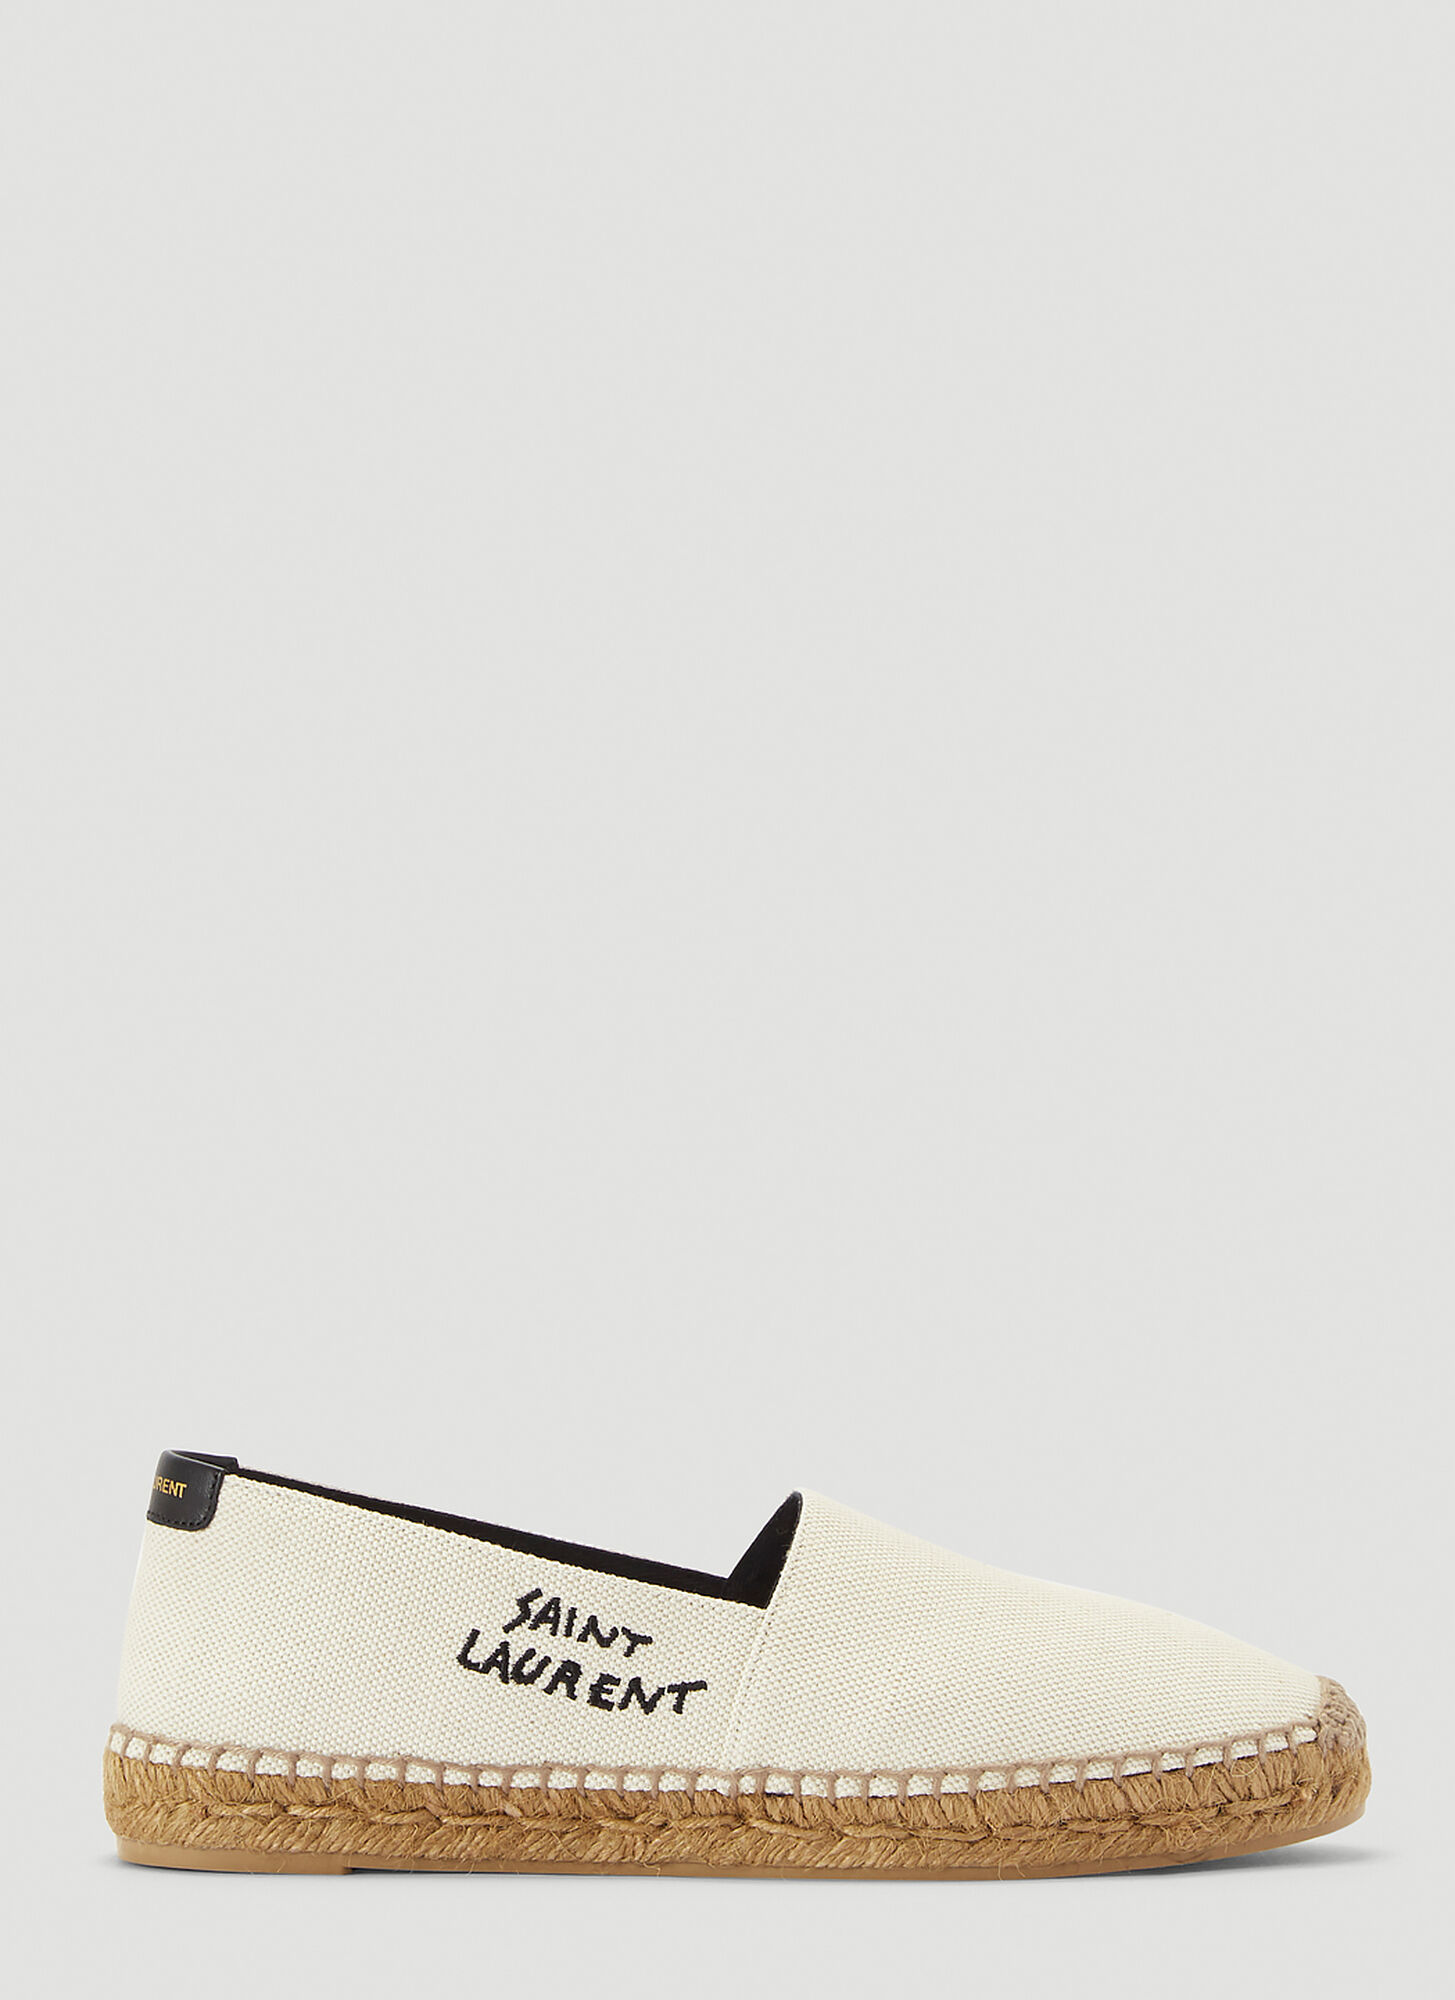 Saint Laurent Logo Espadrilles Shoes